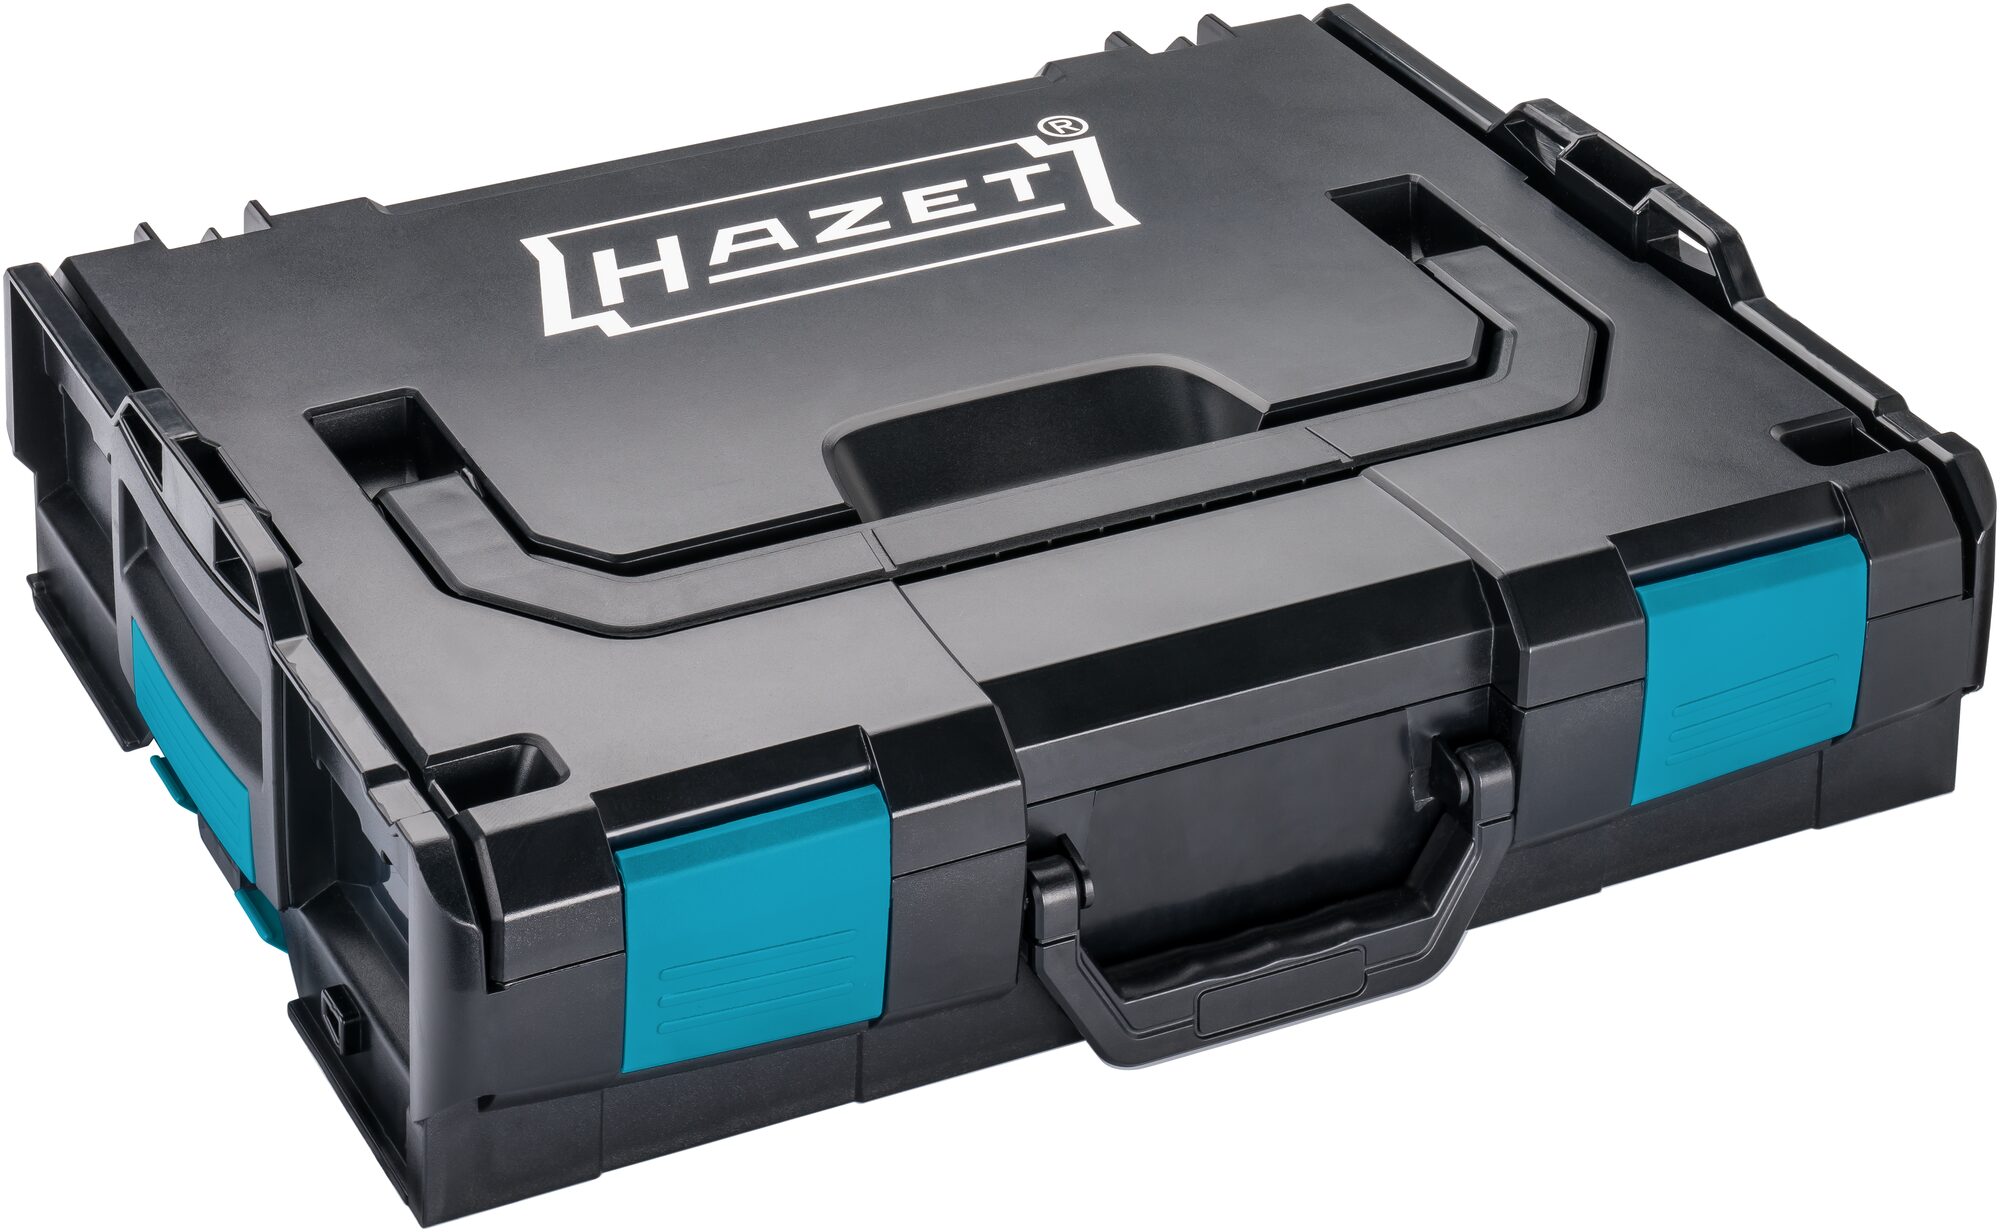 HAZET Werkzeugkoffer mit Werkzeugsortiment online kaufen